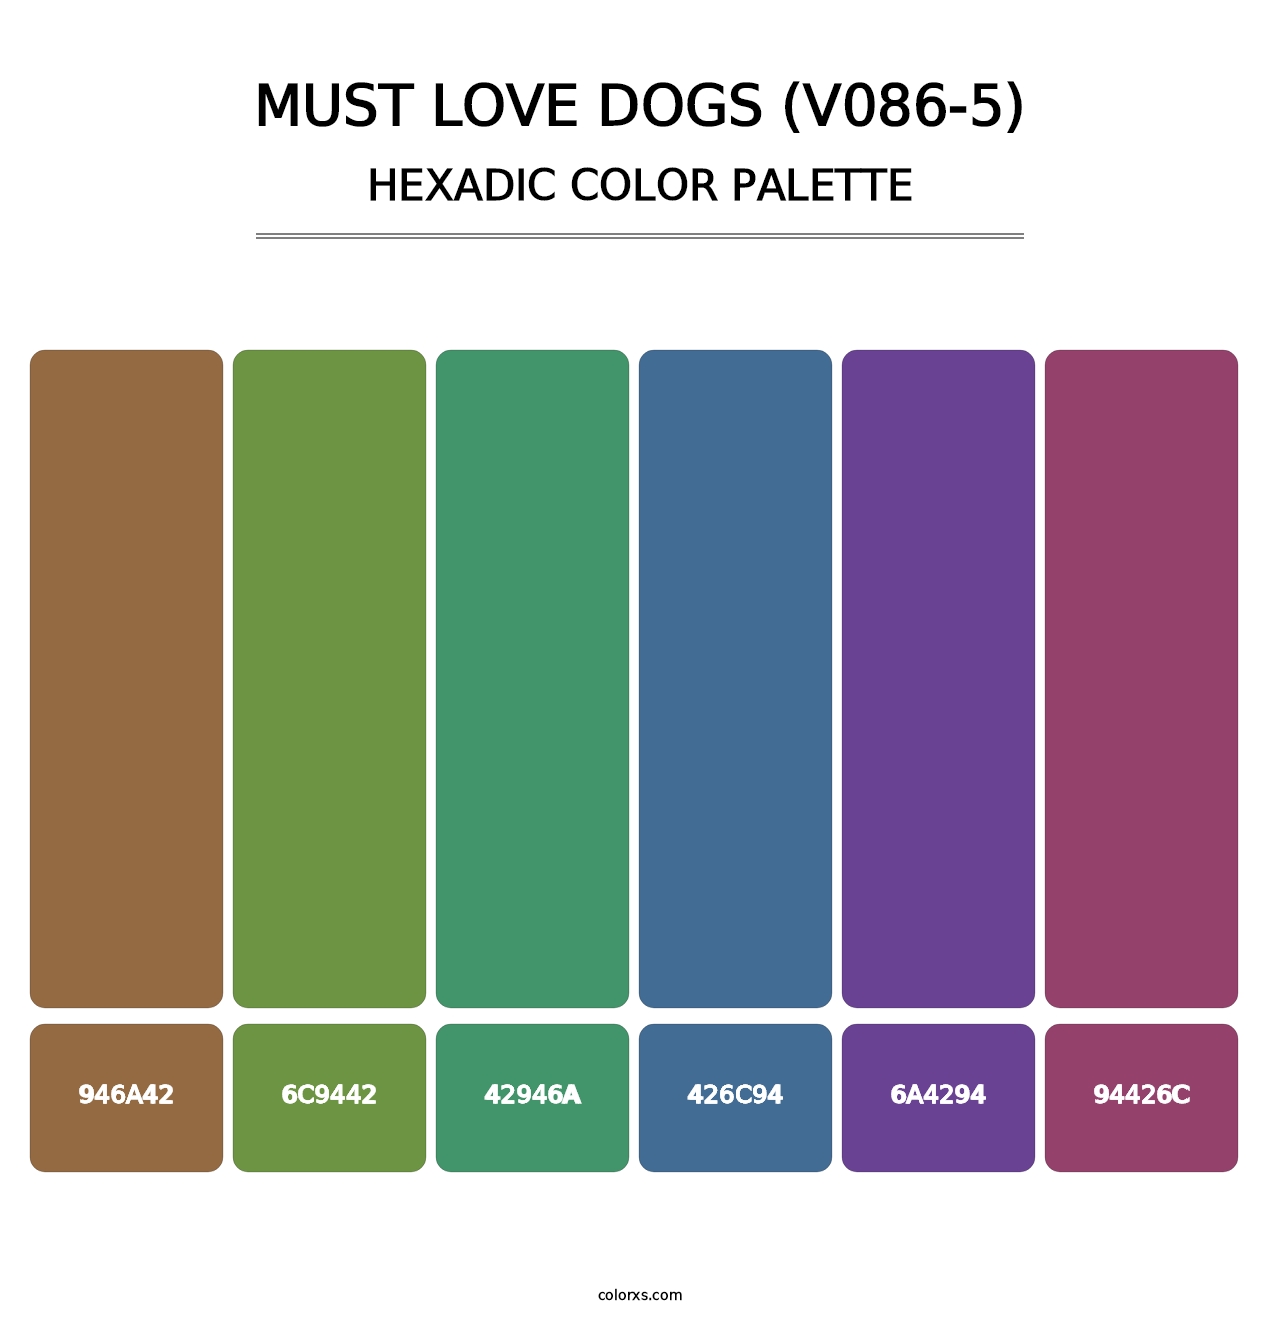 Must Love Dogs (V086-5) - Hexadic Color Palette